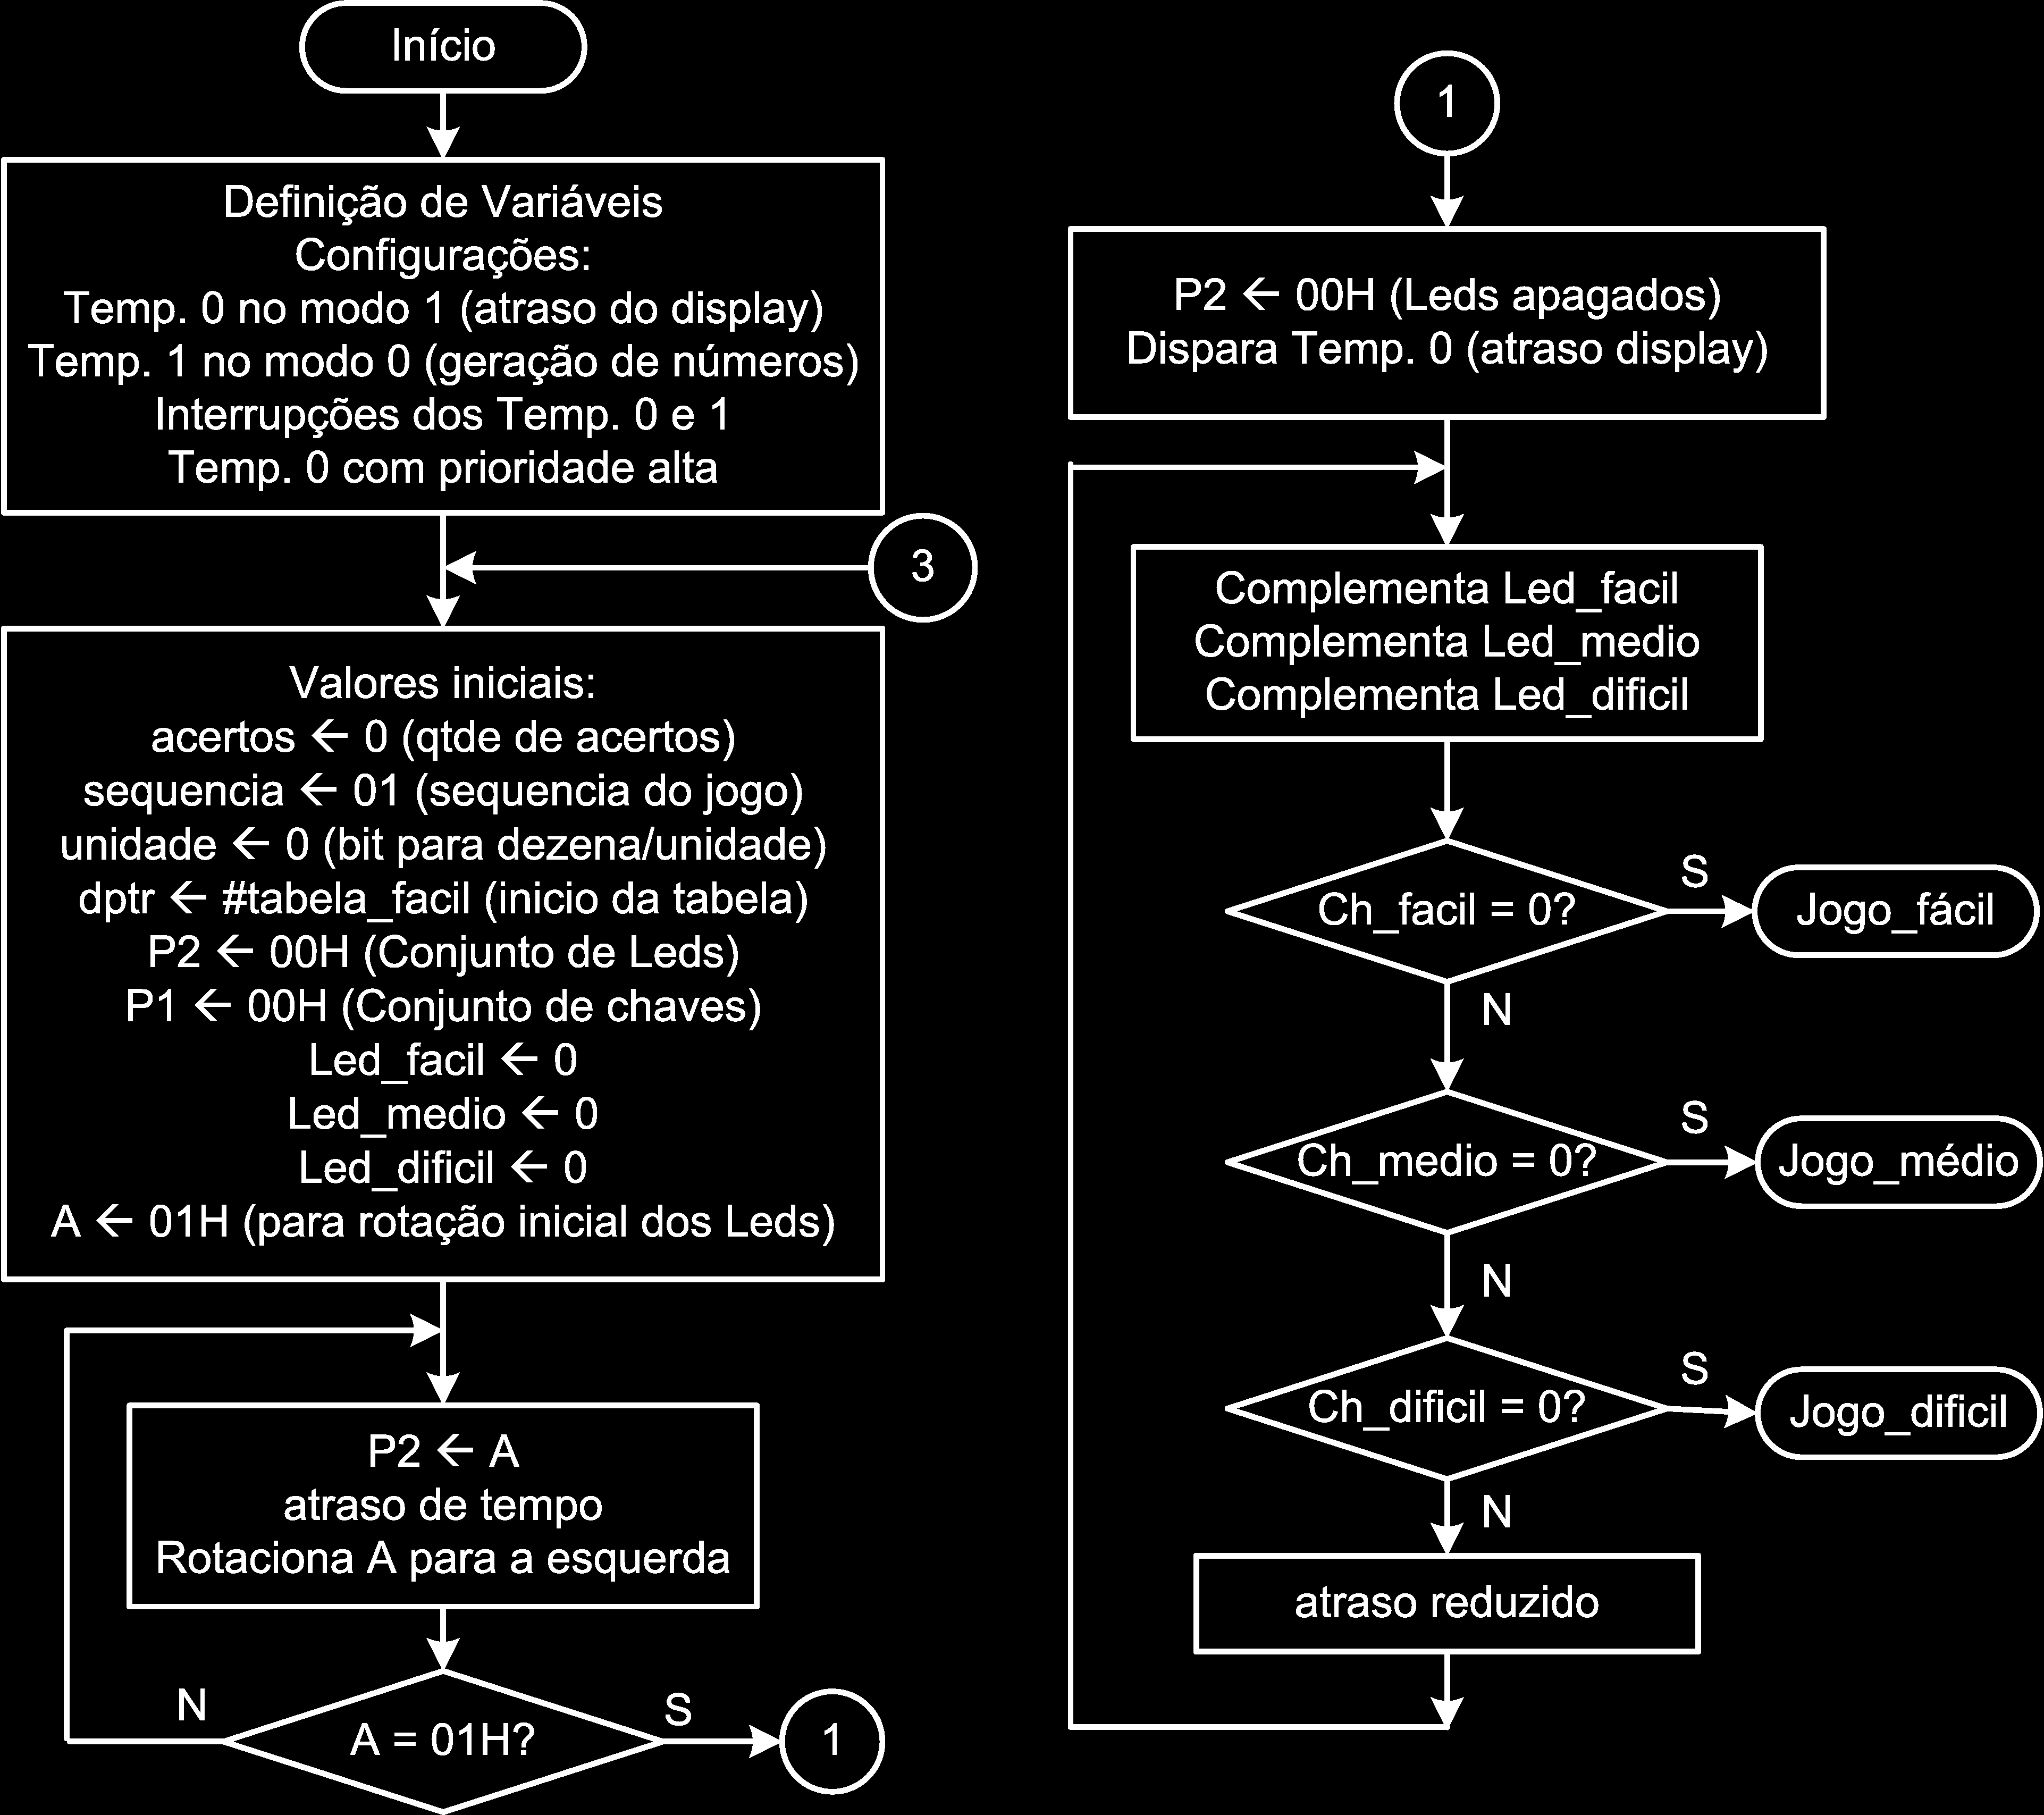 Figure 2: Memorex - Definições e Escolha subrotina leitura_medio, onde o usuário digita a sequência mostrada, que é comparada com a sequência da tabela.